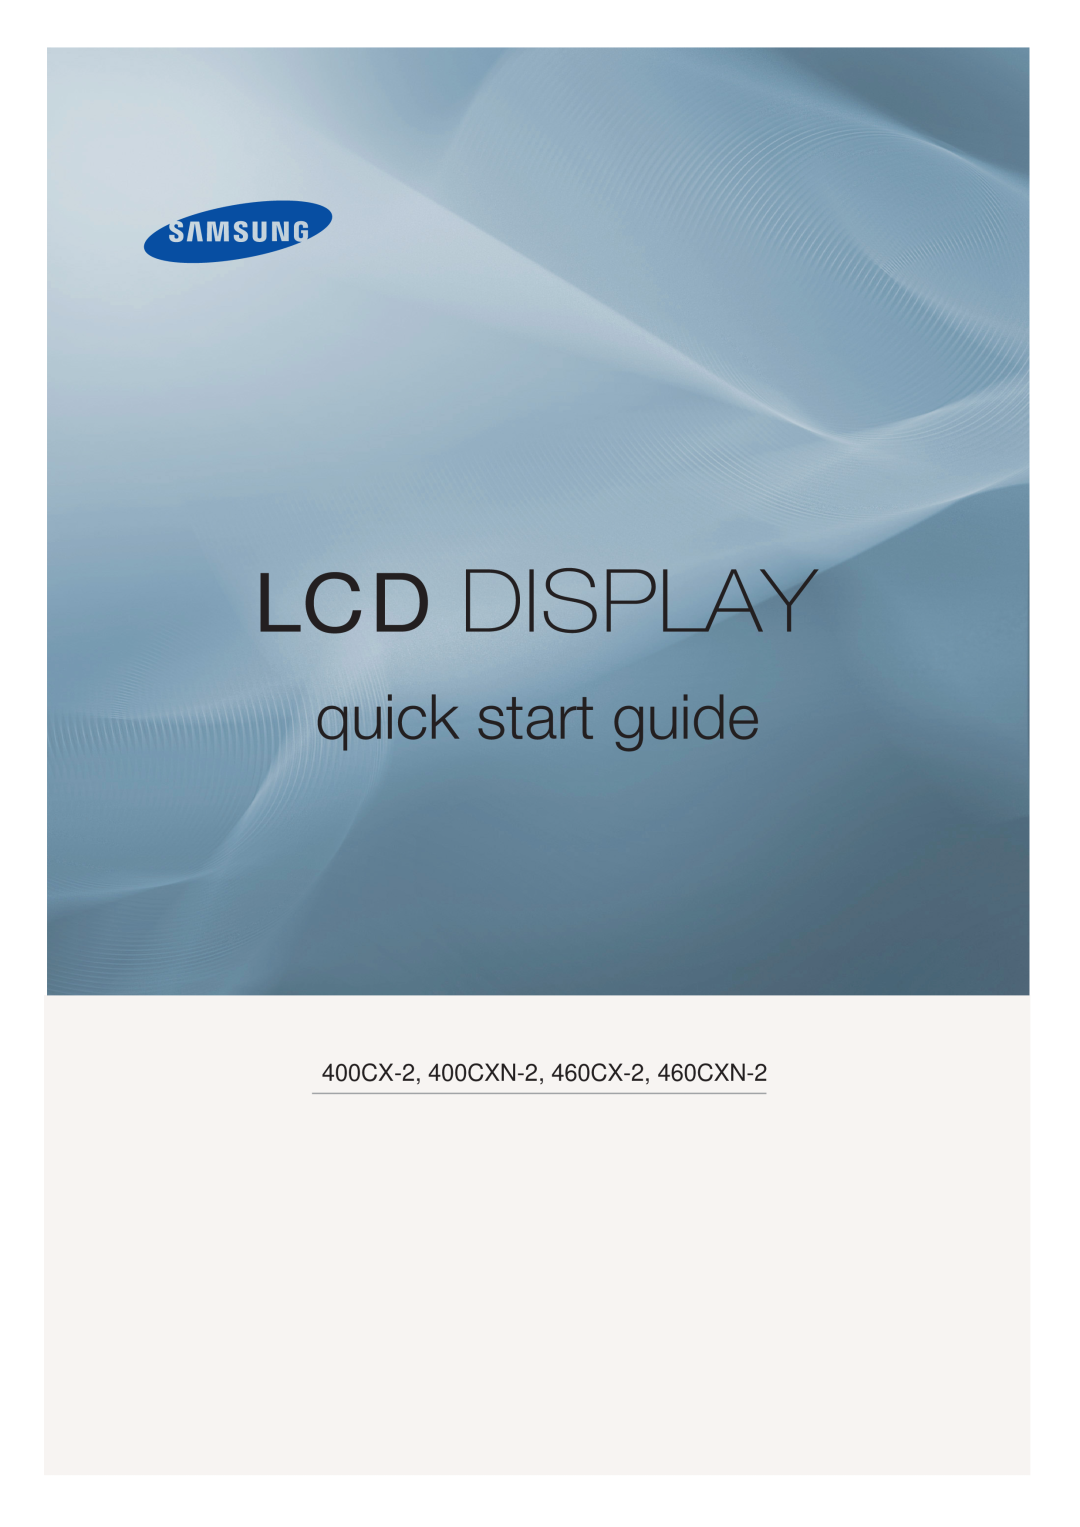 Samsung quick start Lcd Display, quick start guide, 400CX-2, 400CXN-2, 460CX-2, 460CXN-2 